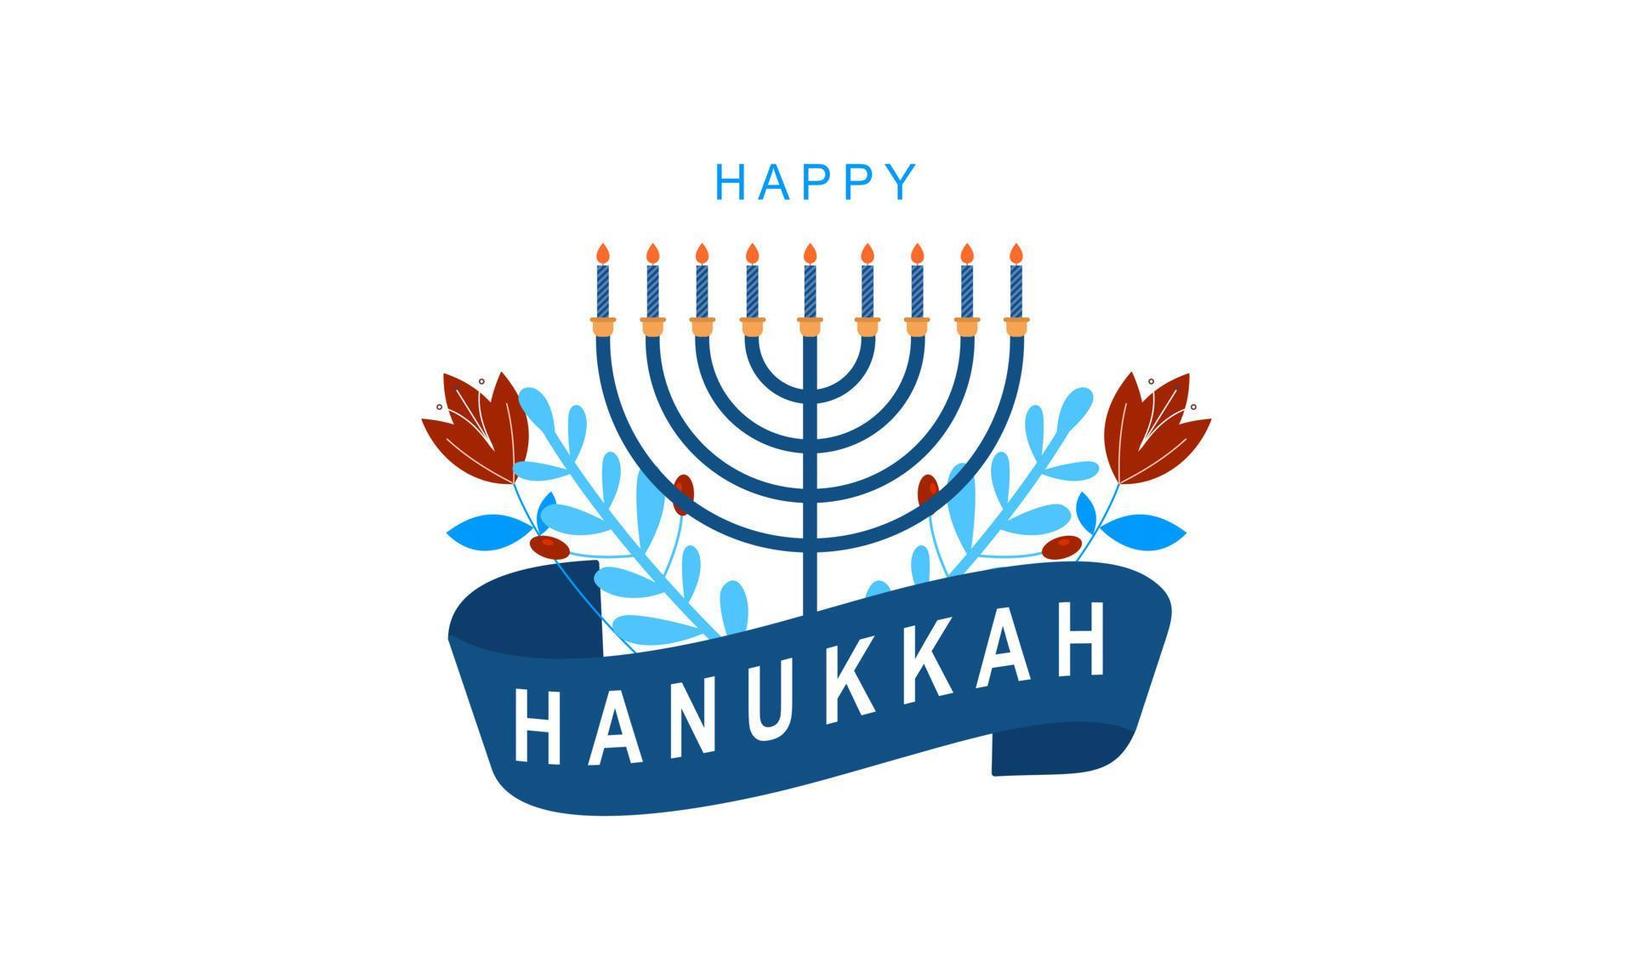 menorah de hanukkah. concept de hanukkah joyeuse fête juive vecteur